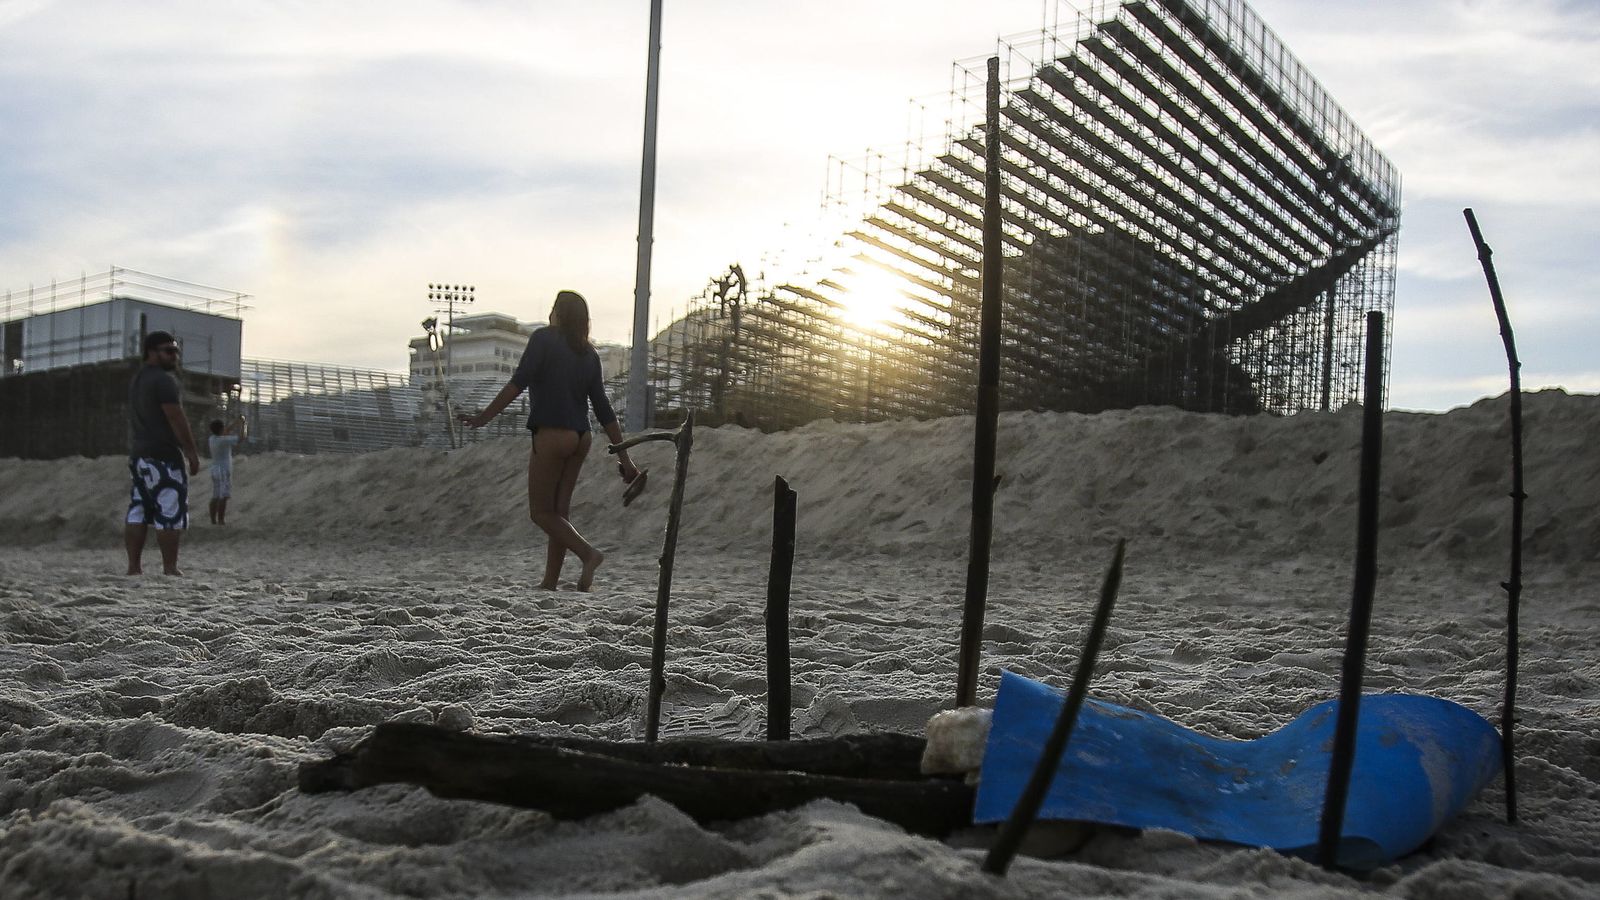 Foto: La semana pasada aparecieron restos humanos junto al estadio de voley playa que se está construyendo en Copacabana (Anotnio Lacerda/EFE)